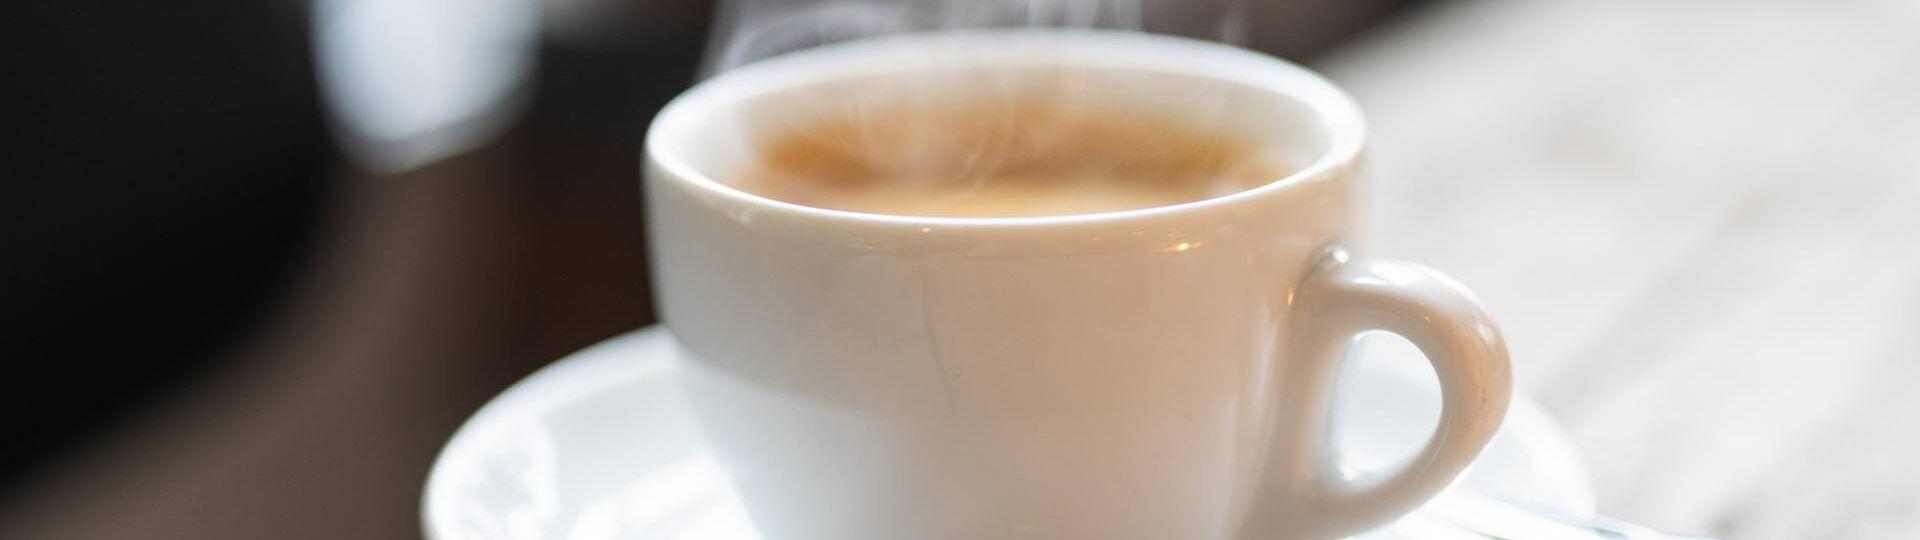 Ein frisch gebrühter Kaffee auf einer Untertasse steht auf einem Holztisch